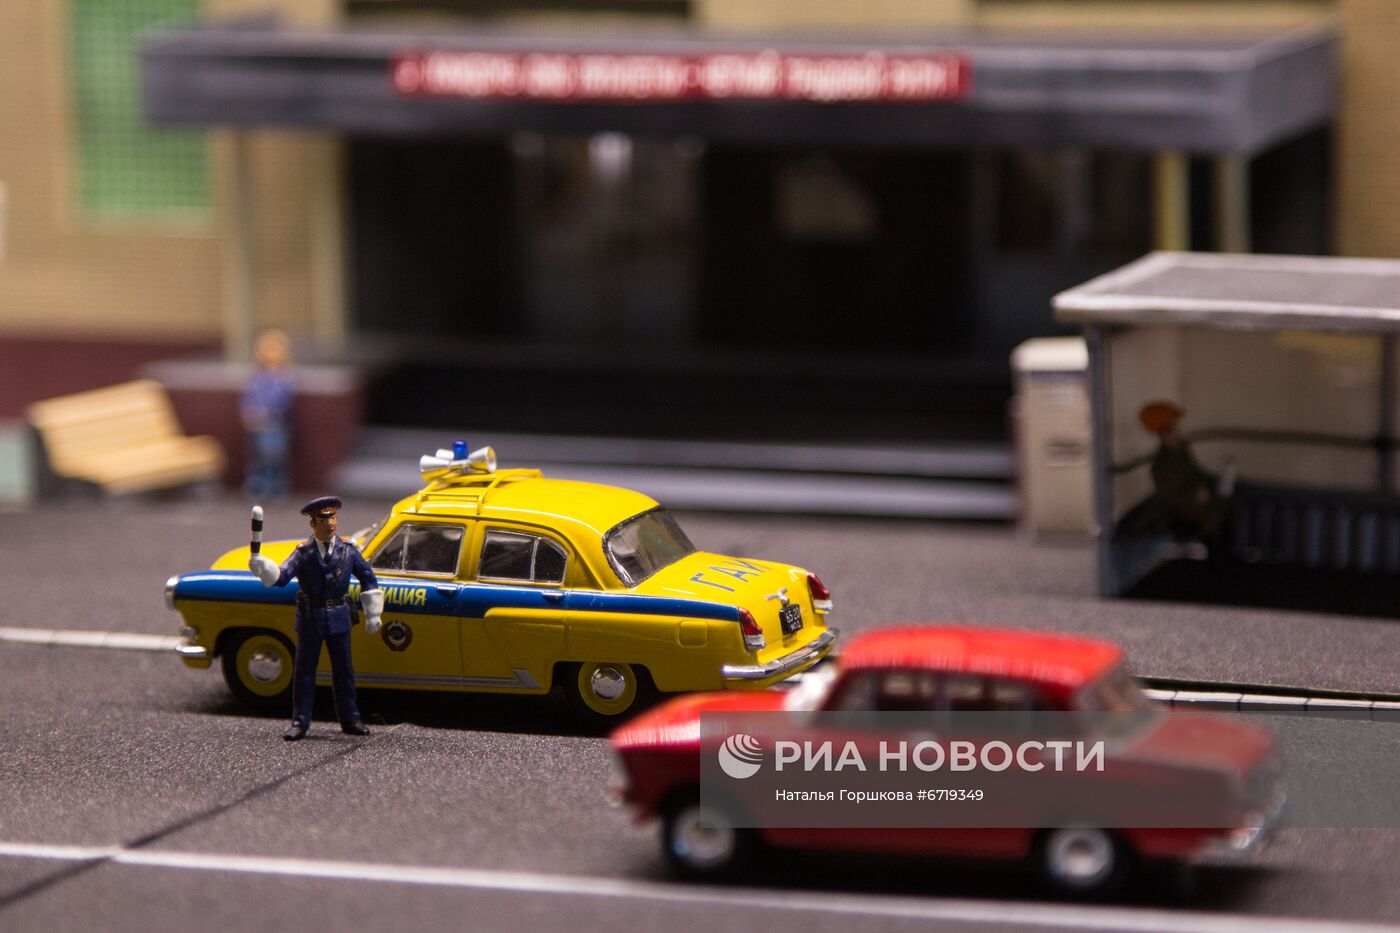 Коллекция миниатюр советских автомобилей В. Игнатюгина